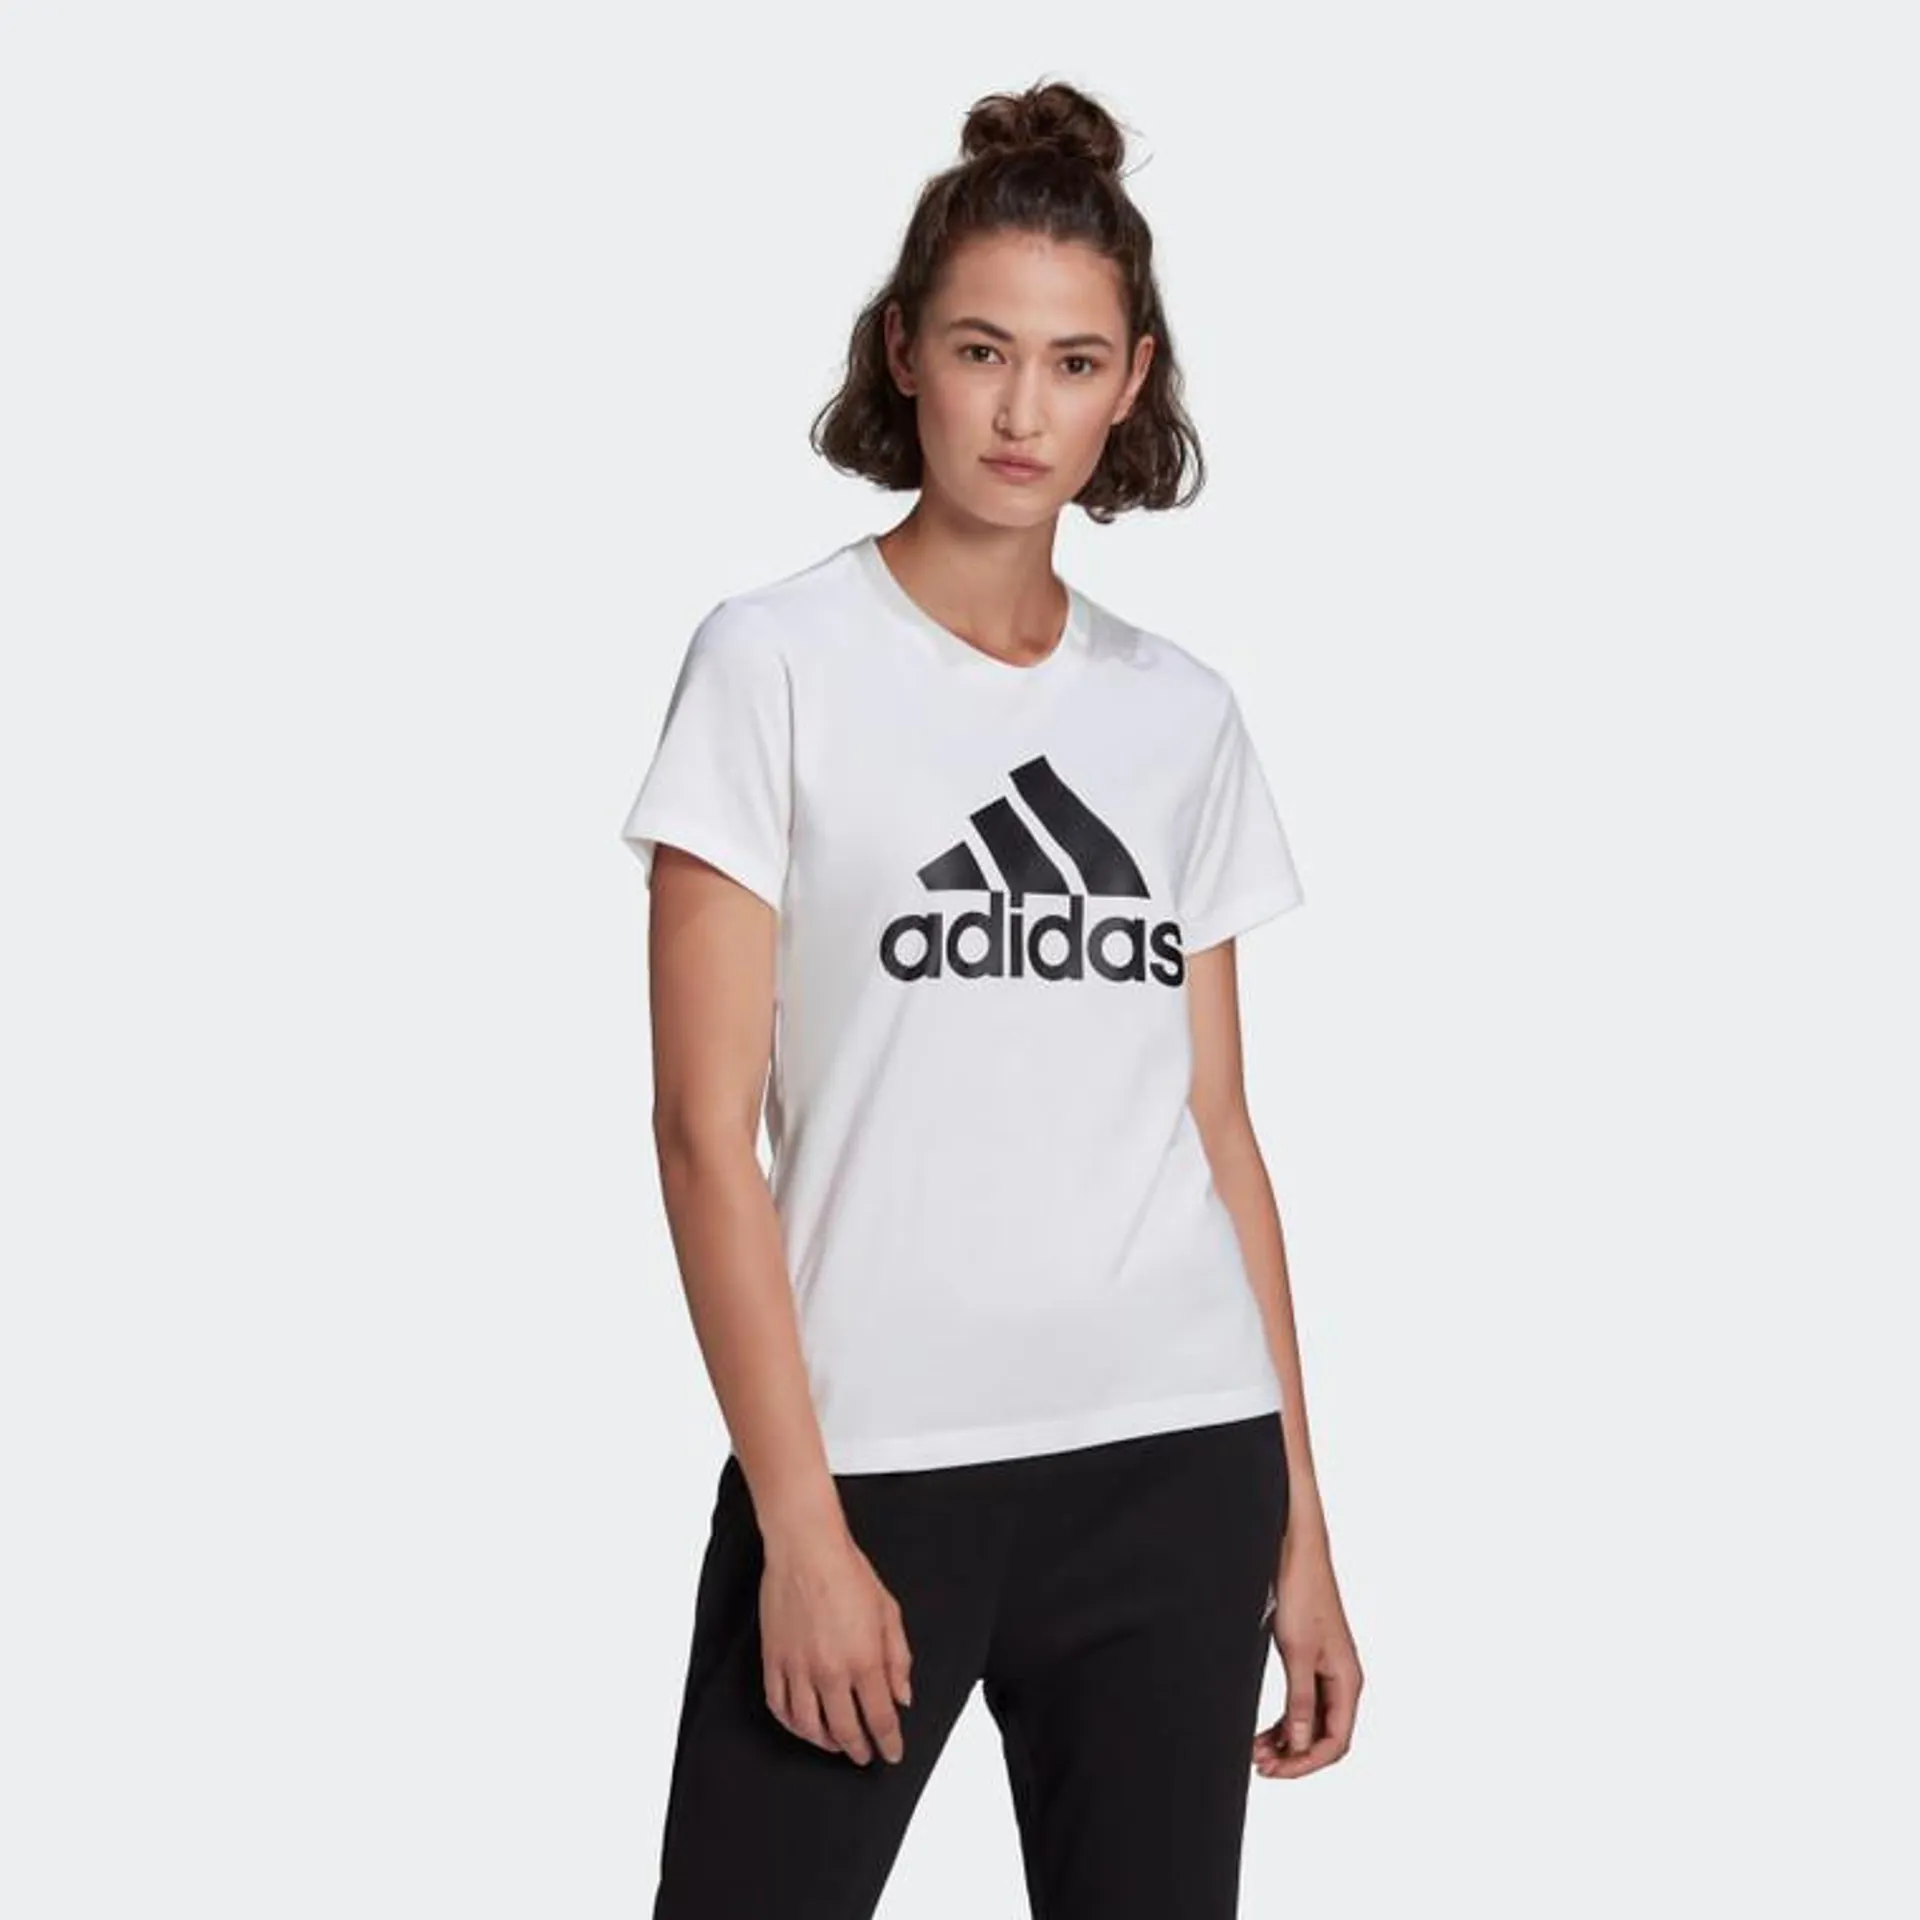 Adidas Womens Essential Big Logo Tee White/Black